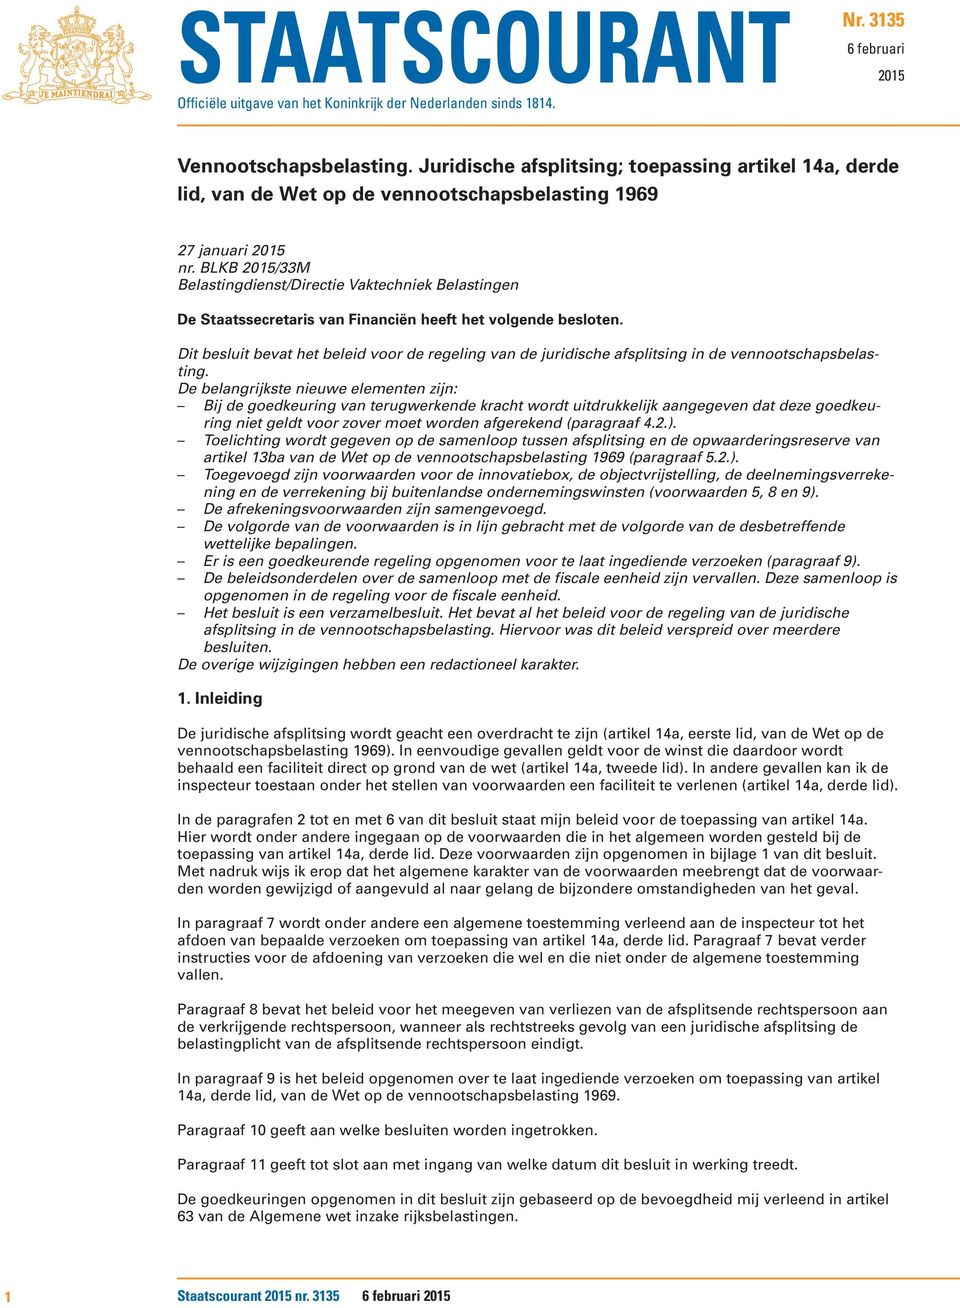 BLKB 2015/33M Belastingdienst/Directie Vaktechniek Belastingen De Staatssecretaris van Financiën heeft het volgende besloten.